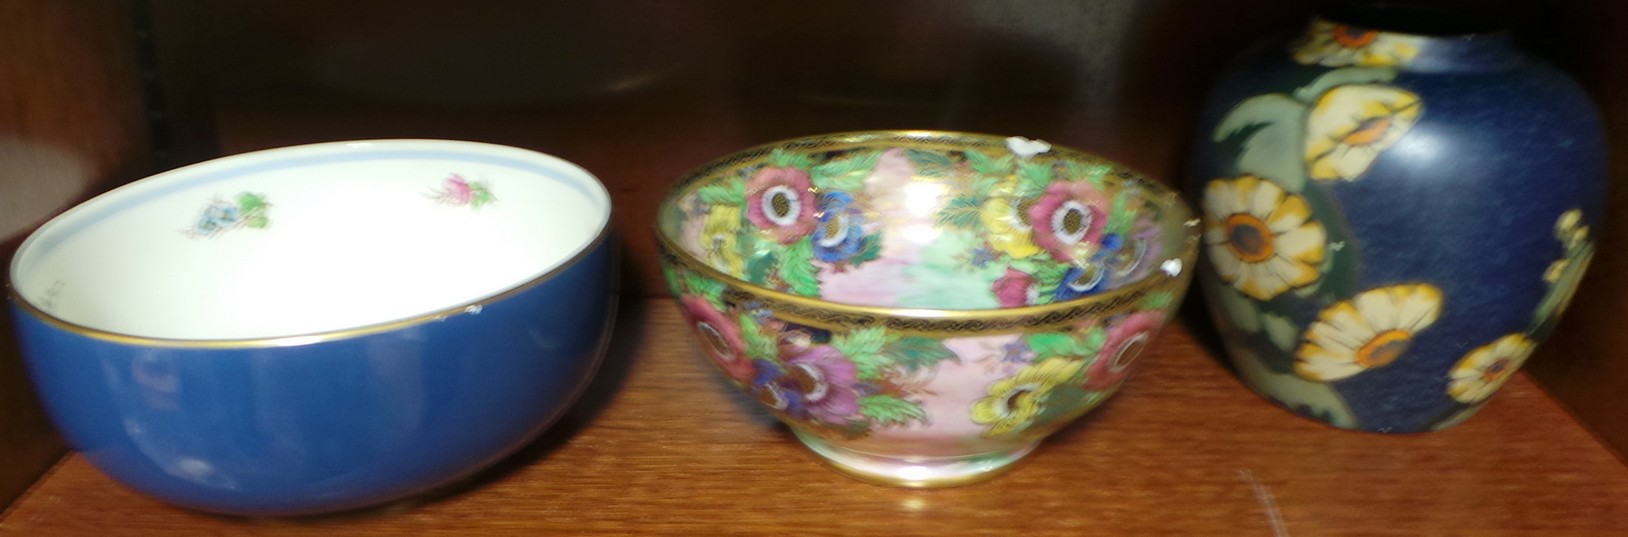 Mintons Fruit Bowl, Porcelain Brentleighware Ming Vase and Mailing Fruit Bowl (damaged)